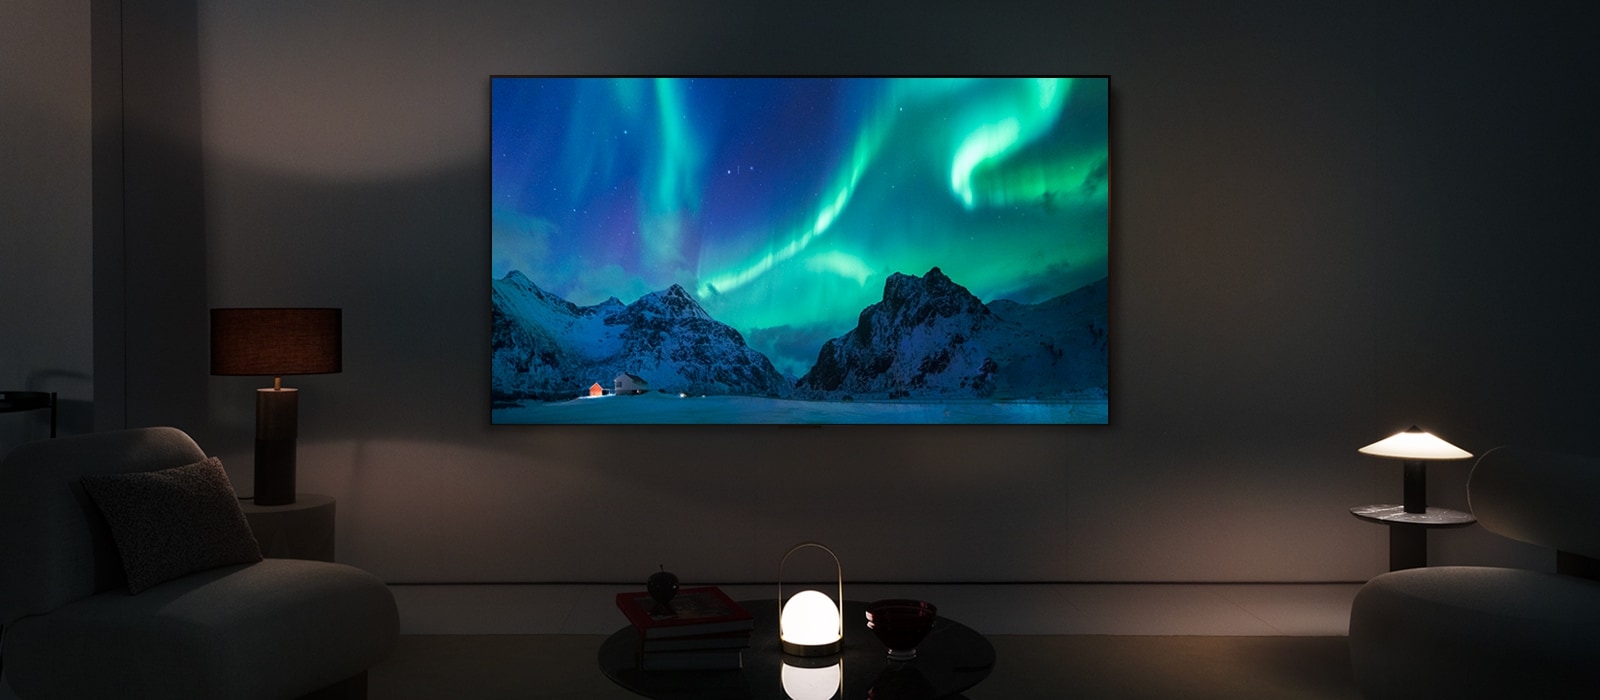 LG OLED TV in een moderne woonruimte bij nacht. Een schermafbeelding van aurora borealis wordt weergegeven met het ideale helderheidsniveau.